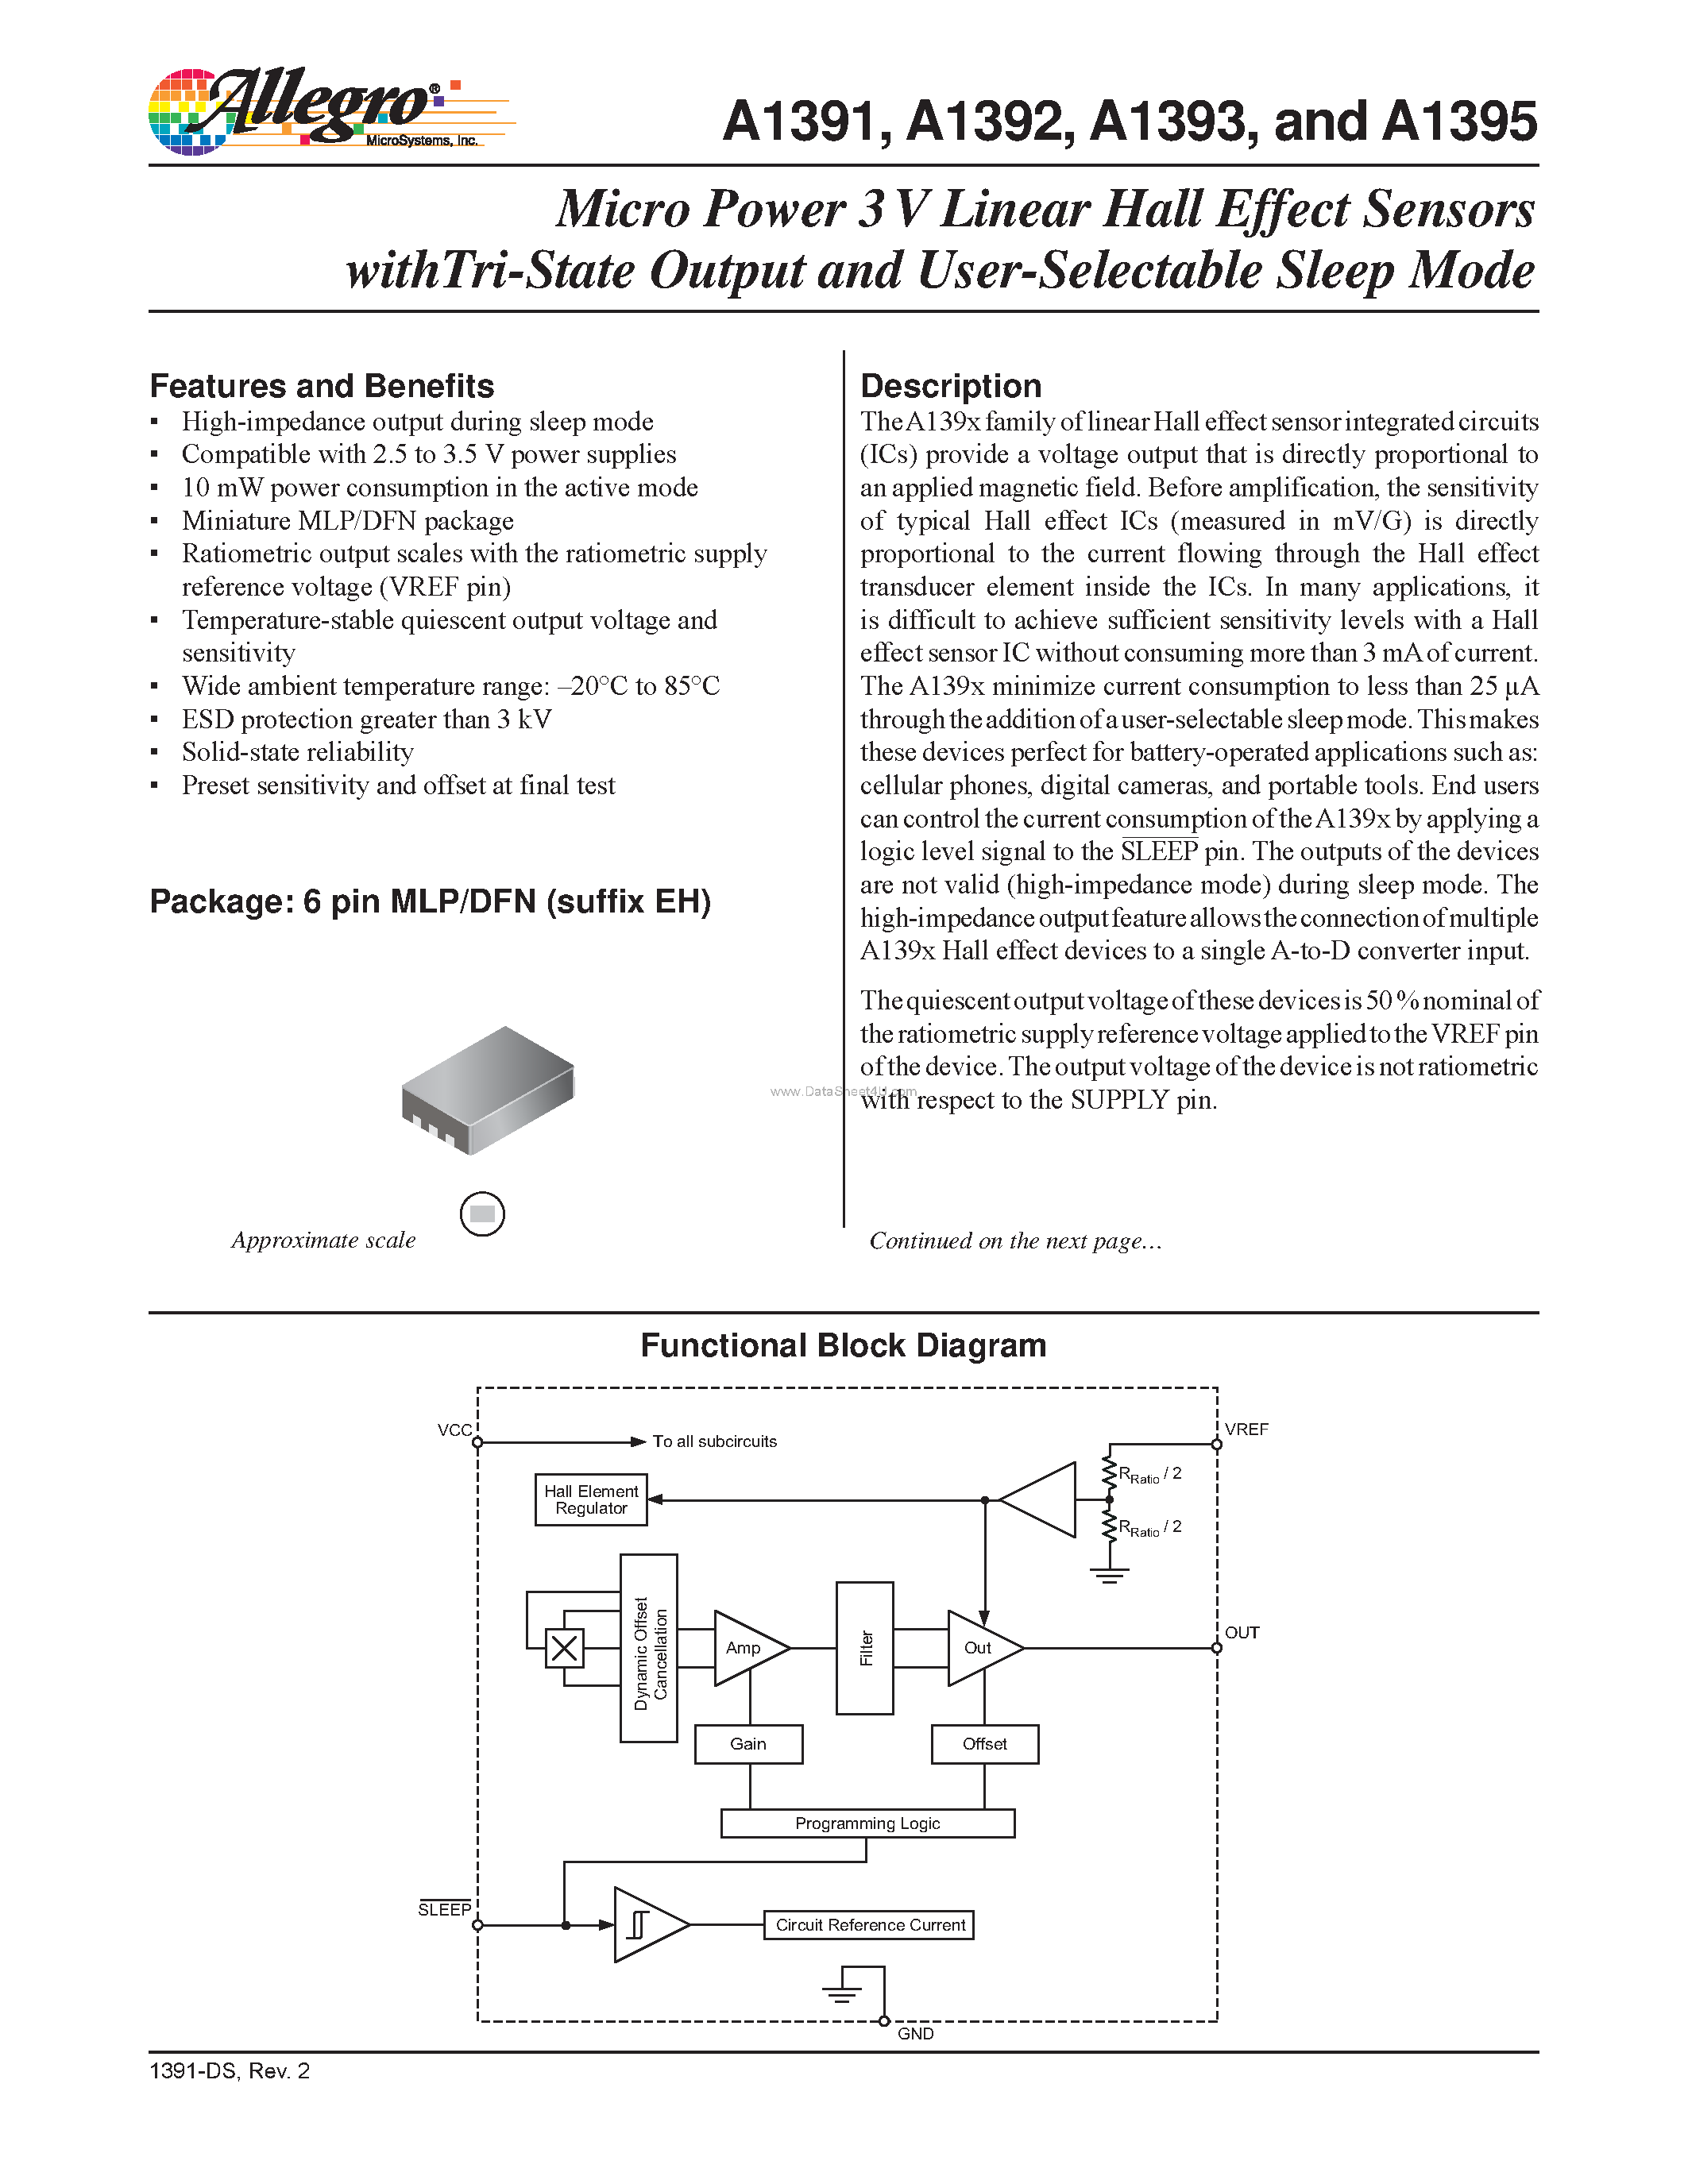 Даташит A1391 - (A1391 - A1395) Micro Power 3 V Linear Hall Effect Sensors страница 1